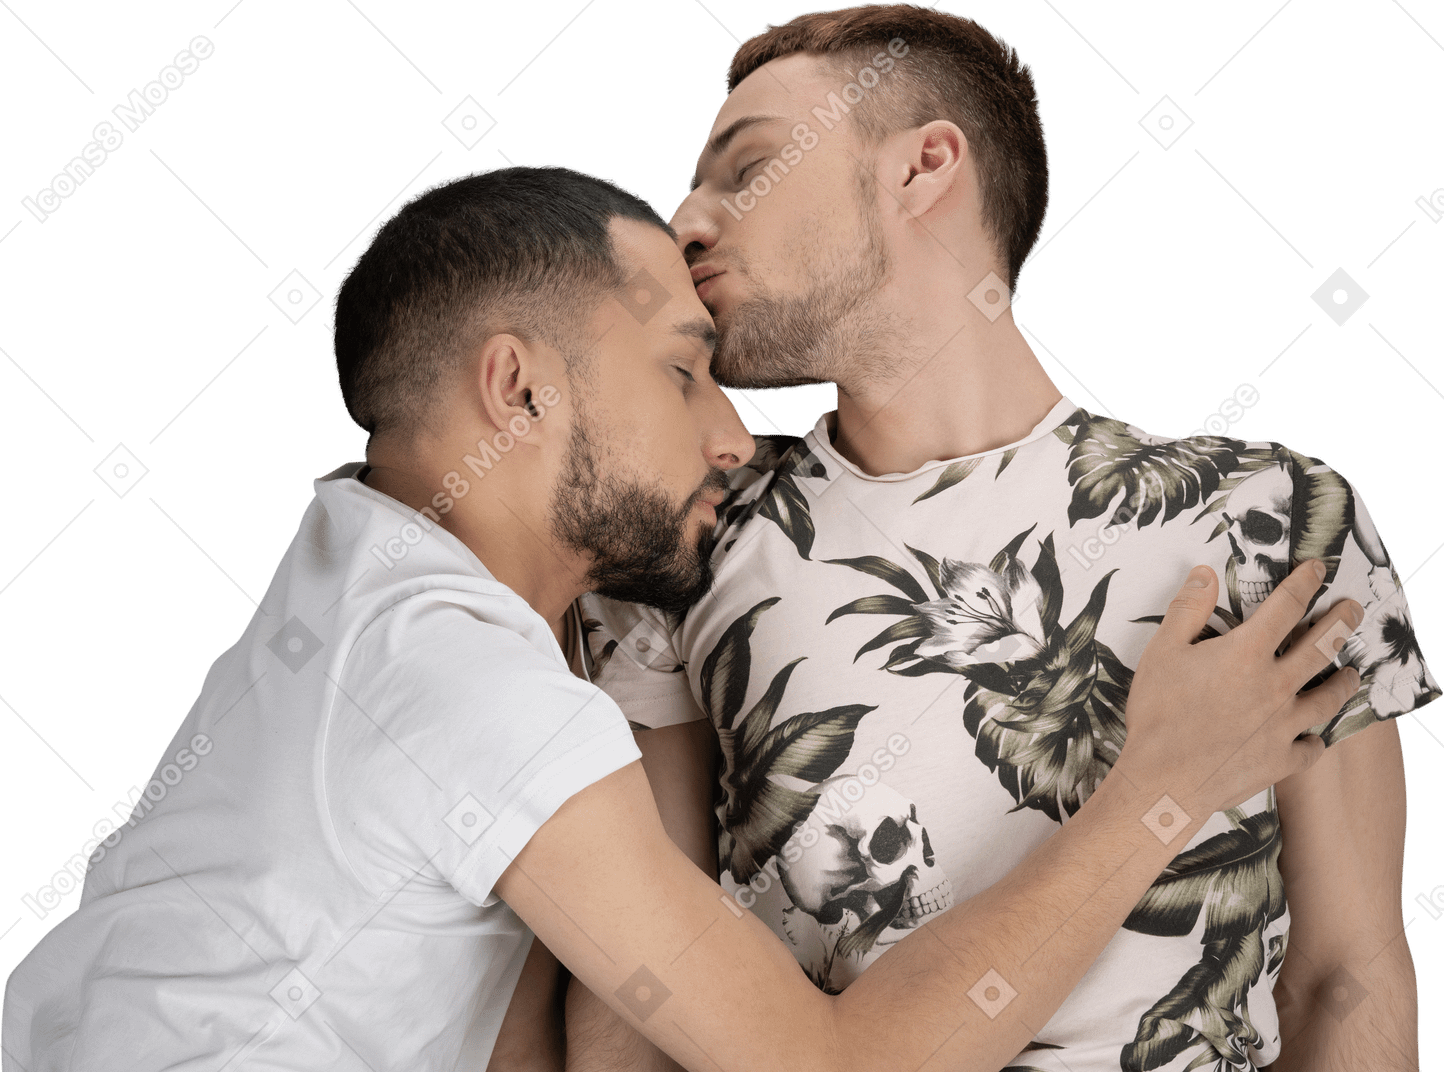 Flache lage von zwei jungen kaukasischen männern, die auf dem boden liegen und sich leicht umarmen und küssen